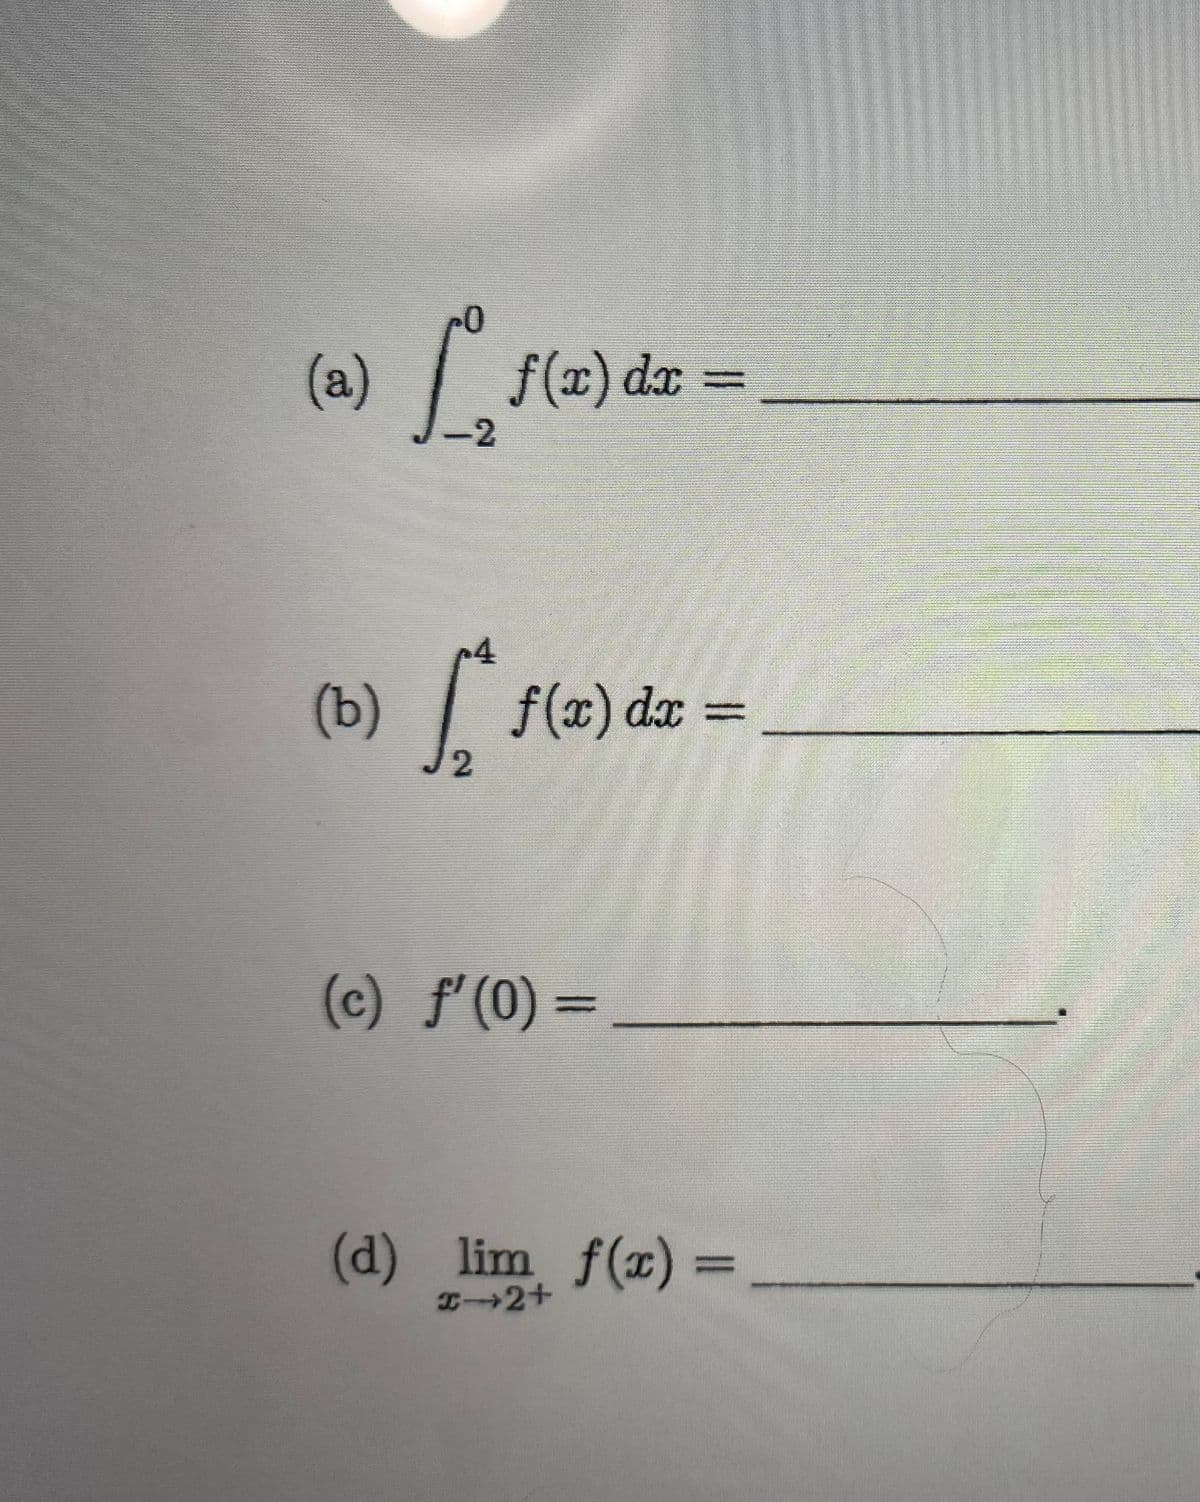 (a)
(b)
[, f(az) da =
dx
-2
|,
1(2)
2
f(w) dæ =
dx
(c) f' (0) =
(d) lim f(x) =
x-2+